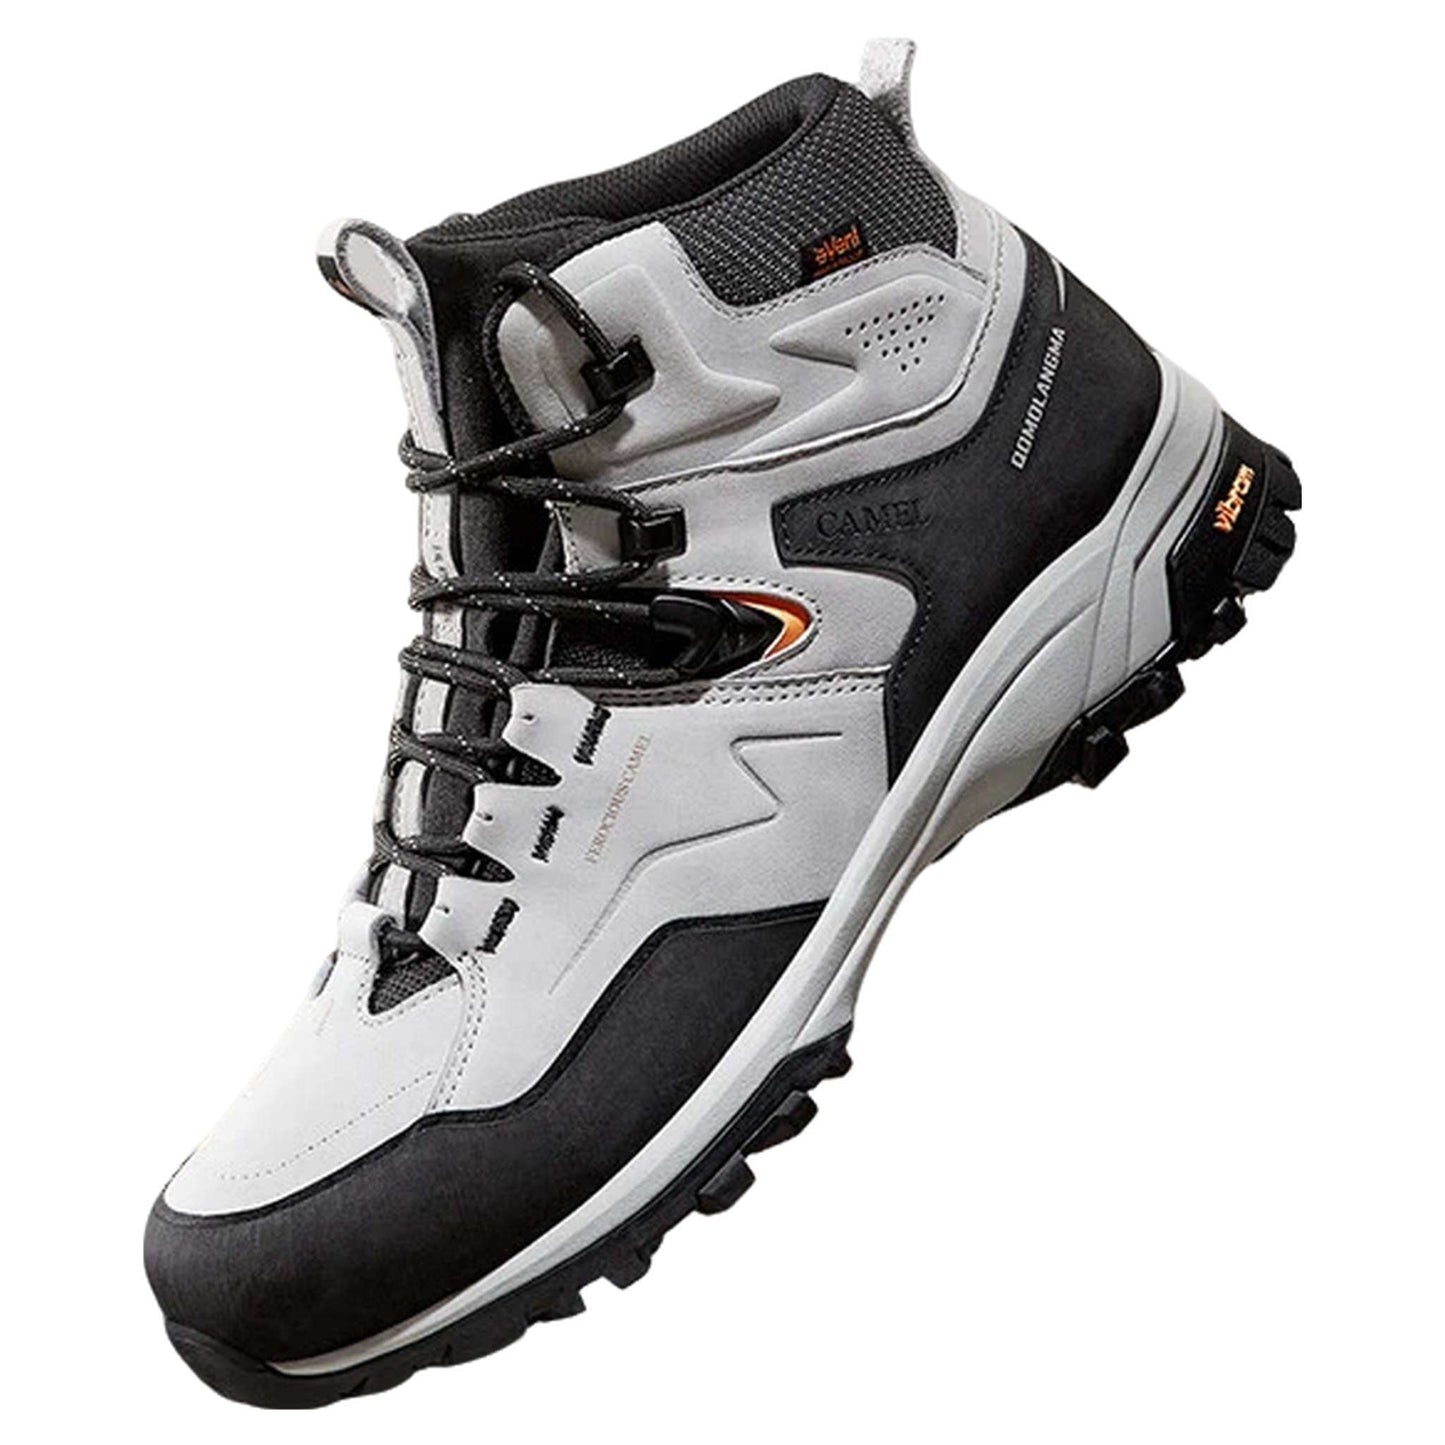 Outdoor Hiking Men's Boots – eVent Waterproof High-Top Trekking Footwear with Vibram Soles